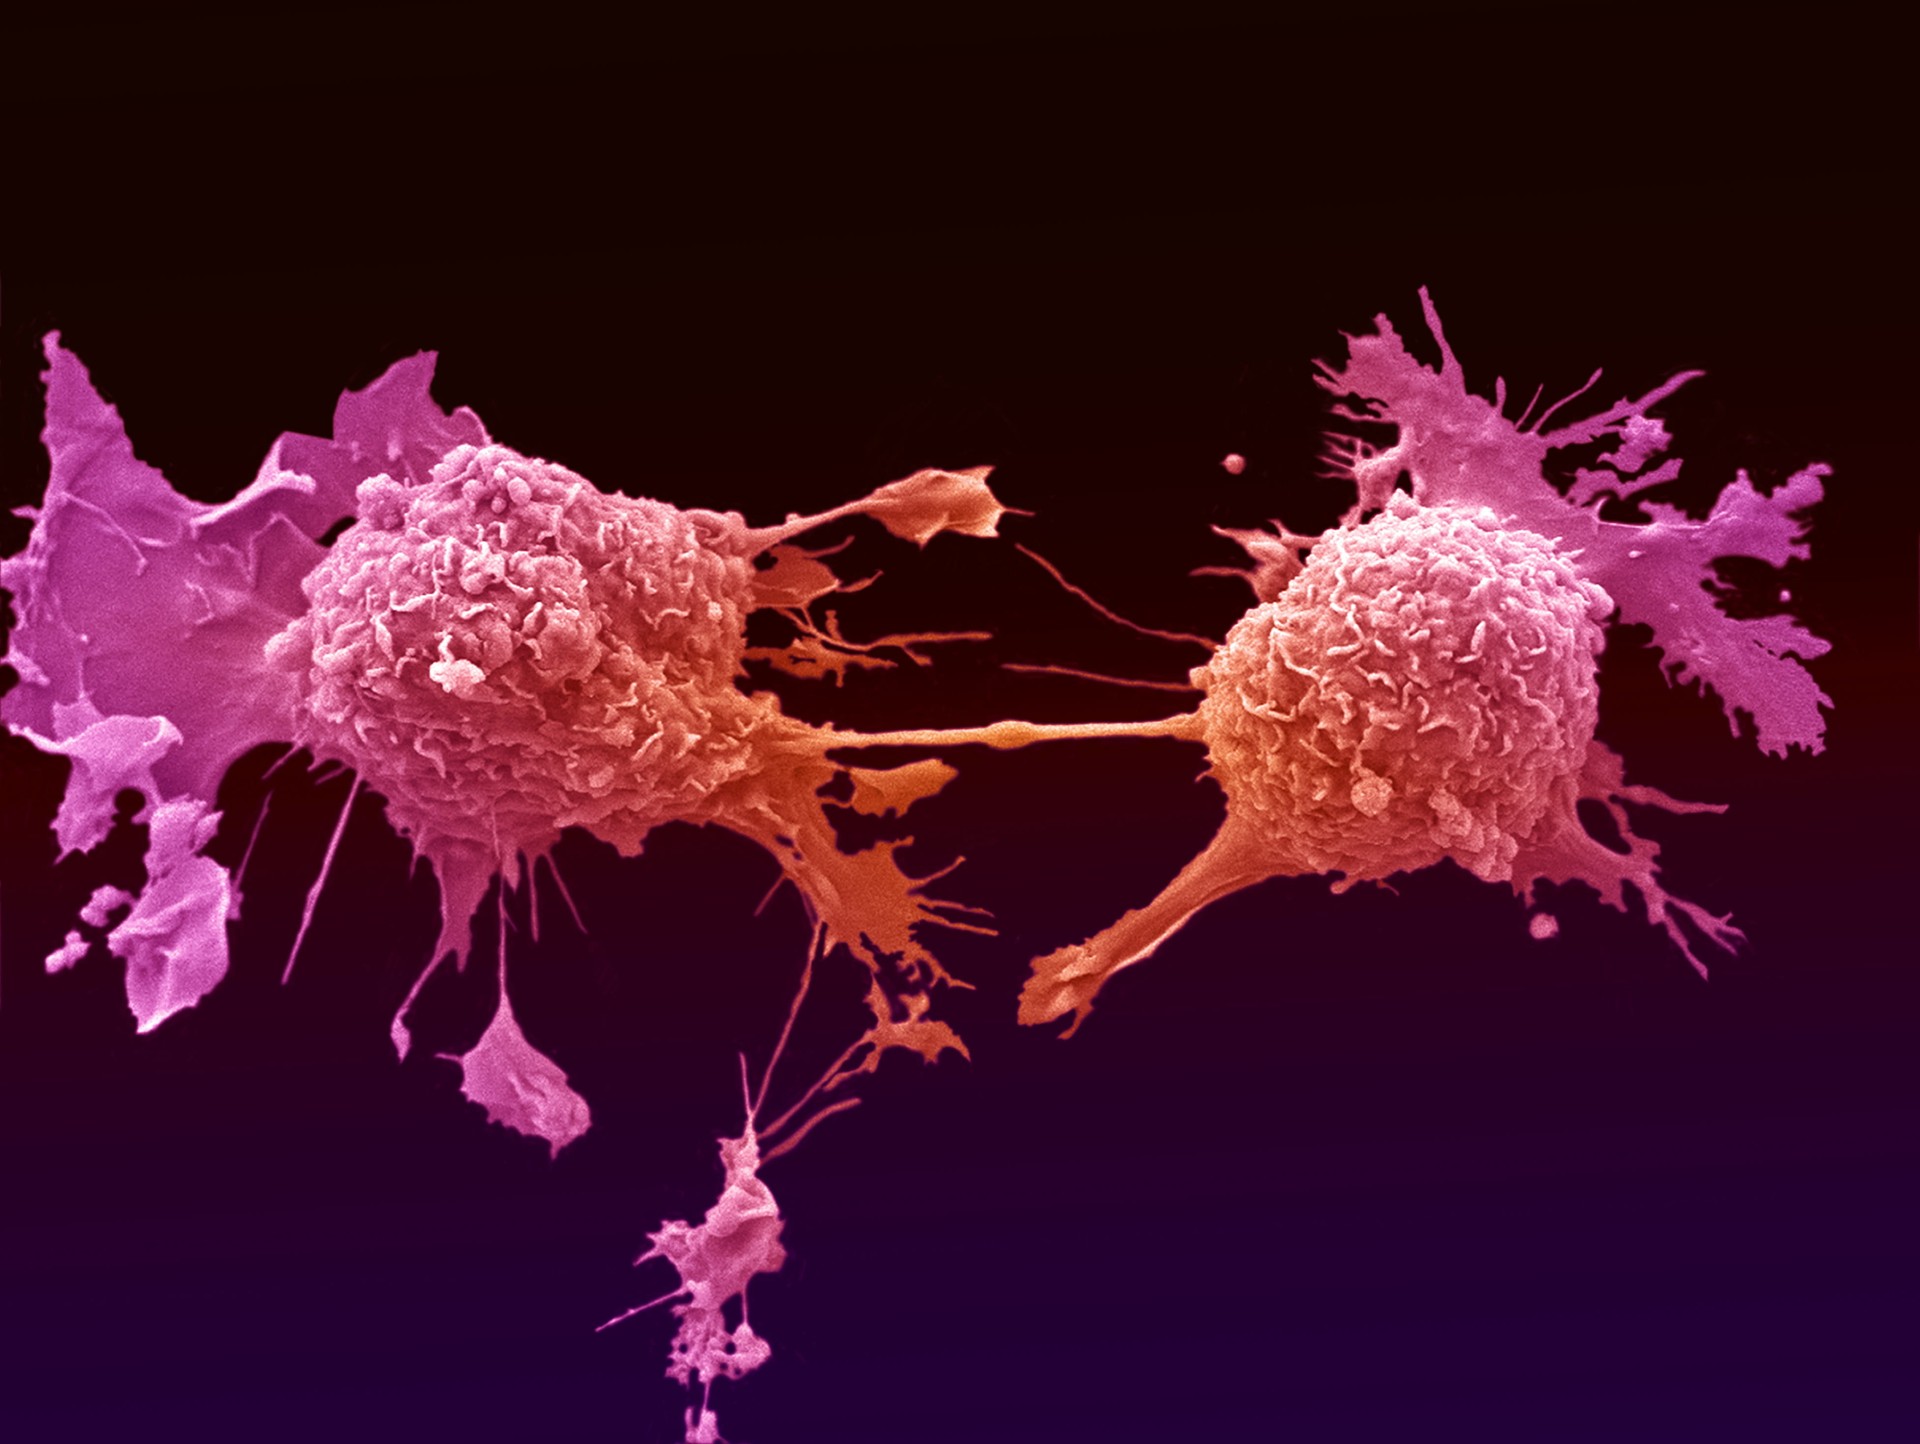 ارایه دی سی تراپی در سرطان توسط دکتر عباس زادگان در سمینار ژن، سلول، بافت